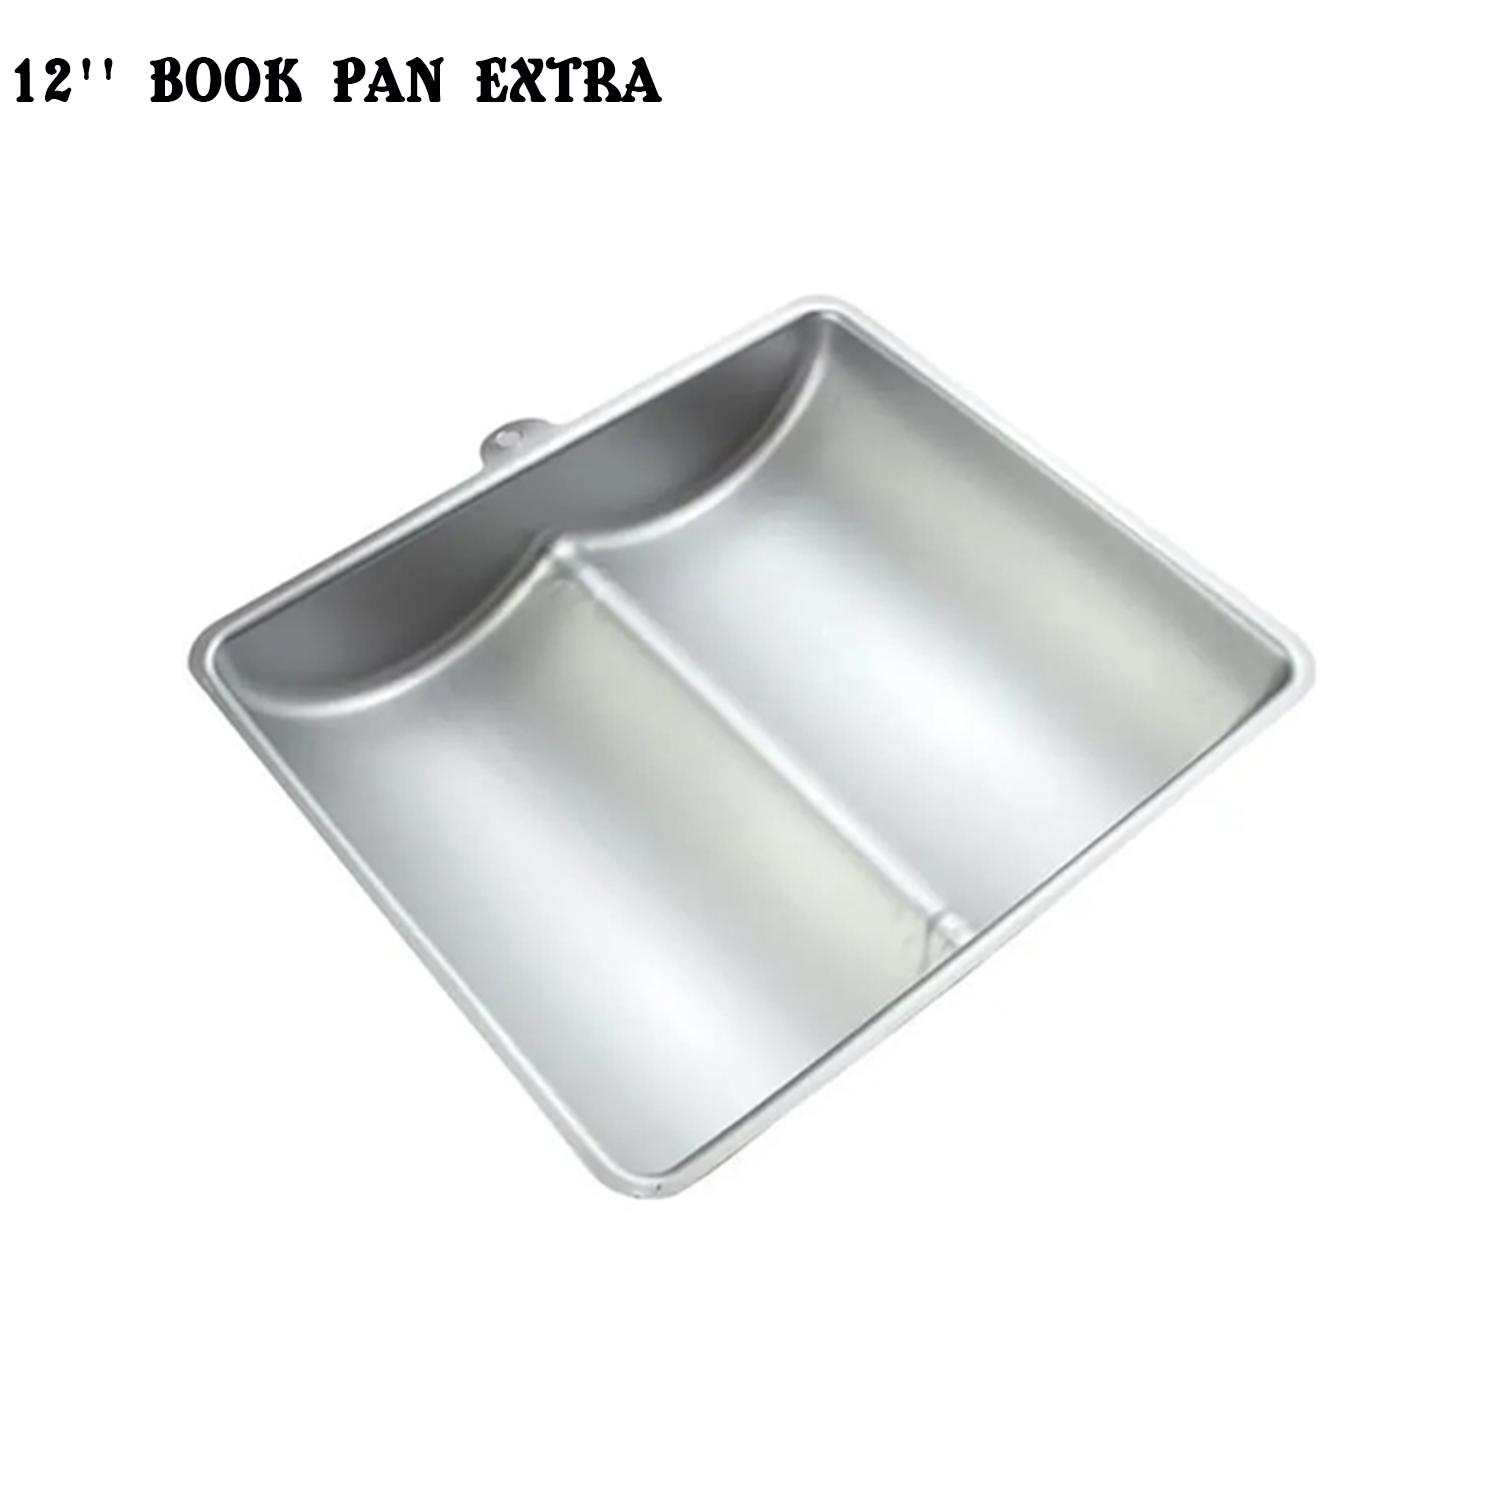 12'' BOOK PAN EXTRA